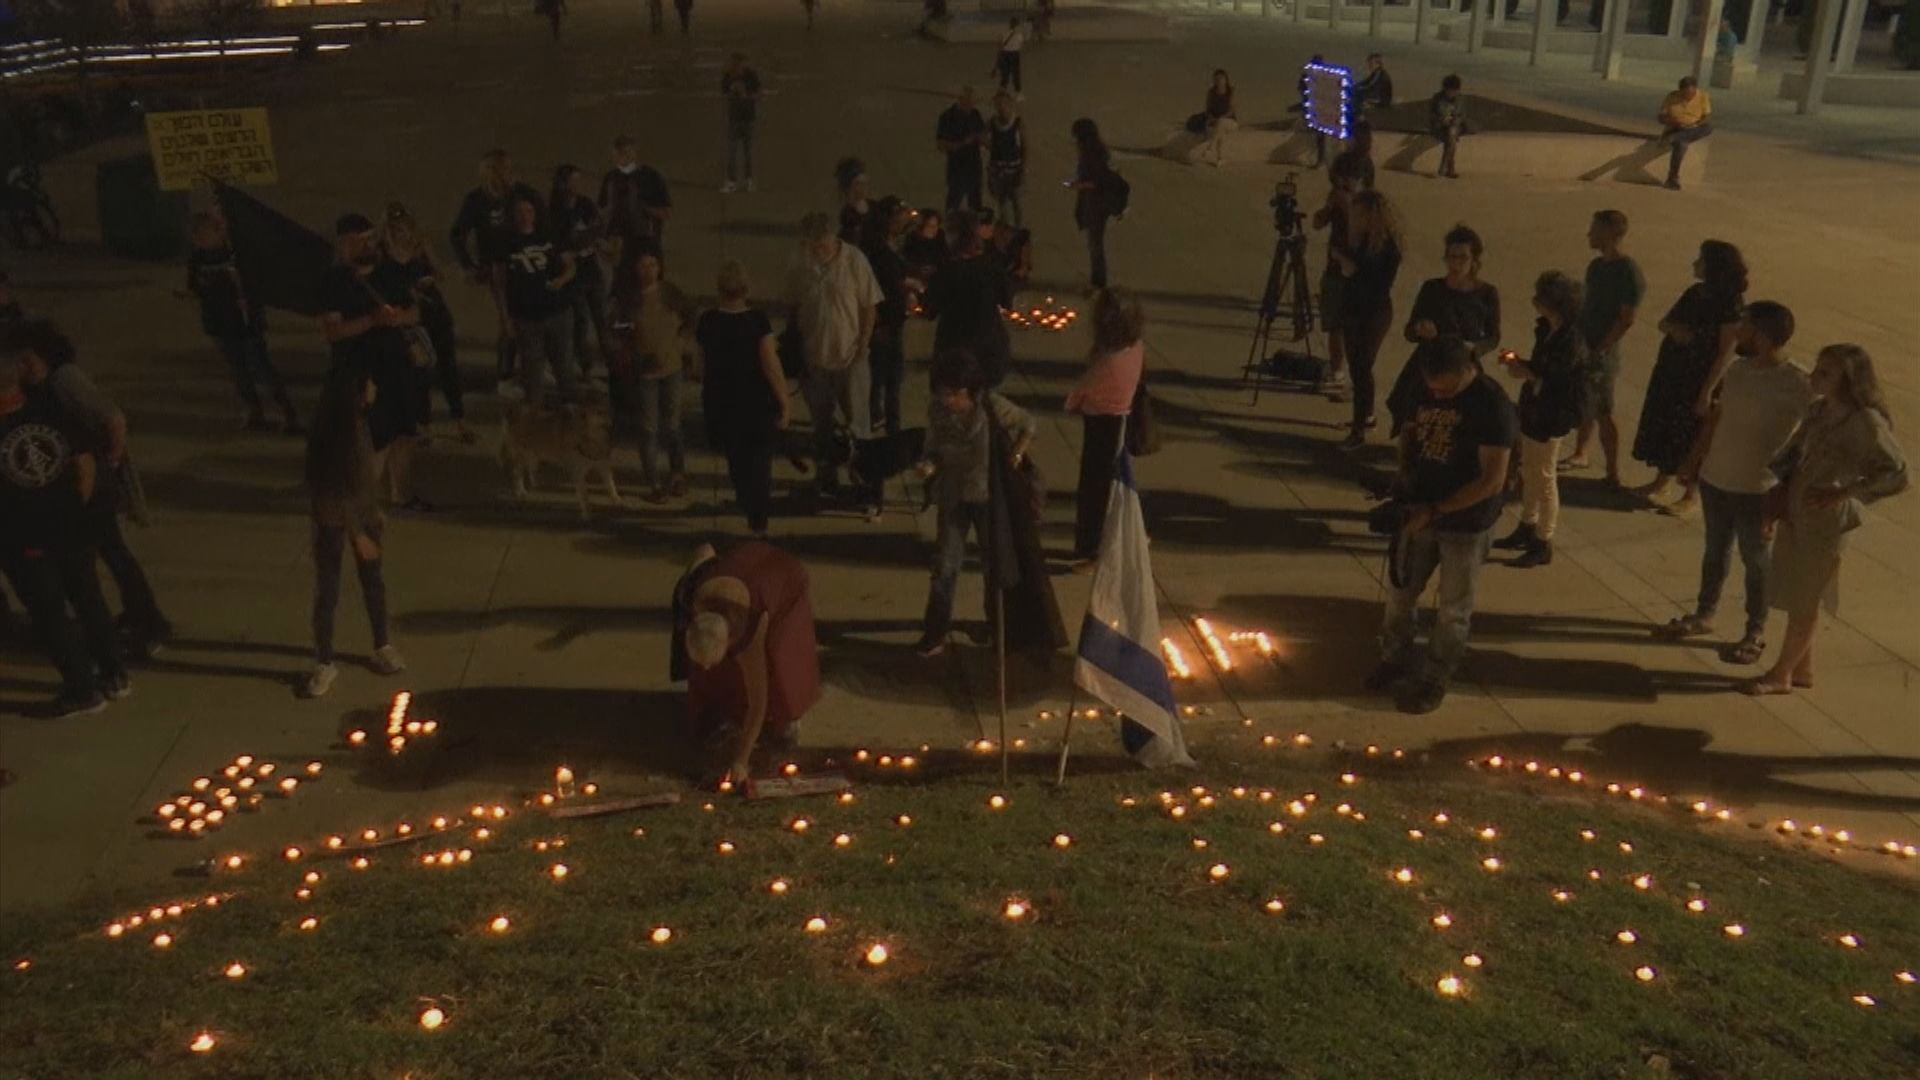 以色列燭光活動紀念人踩人慘劇死者